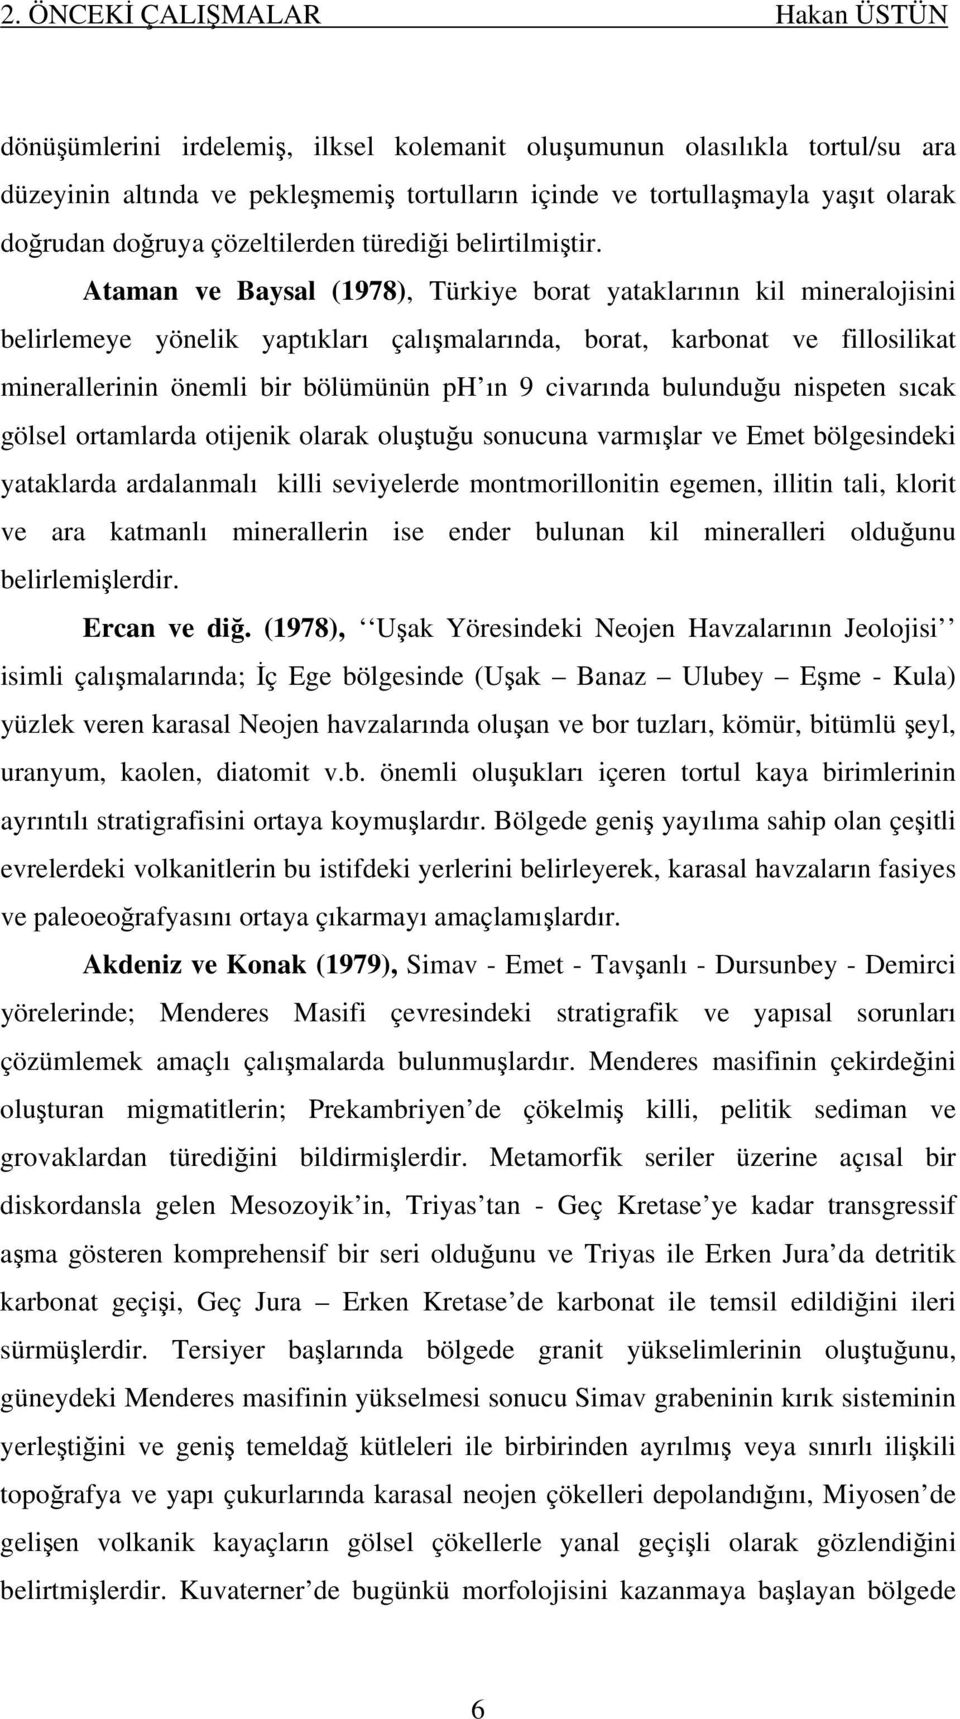 Ataman ve Baysal (1978), Türkiye borat yataklarının kil mineralojisini belirlemeye yönelik yaptıkları çalışmalarında, borat, karbonat ve fillosilikat minerallerinin önemli bir bölümünün ph ın 9